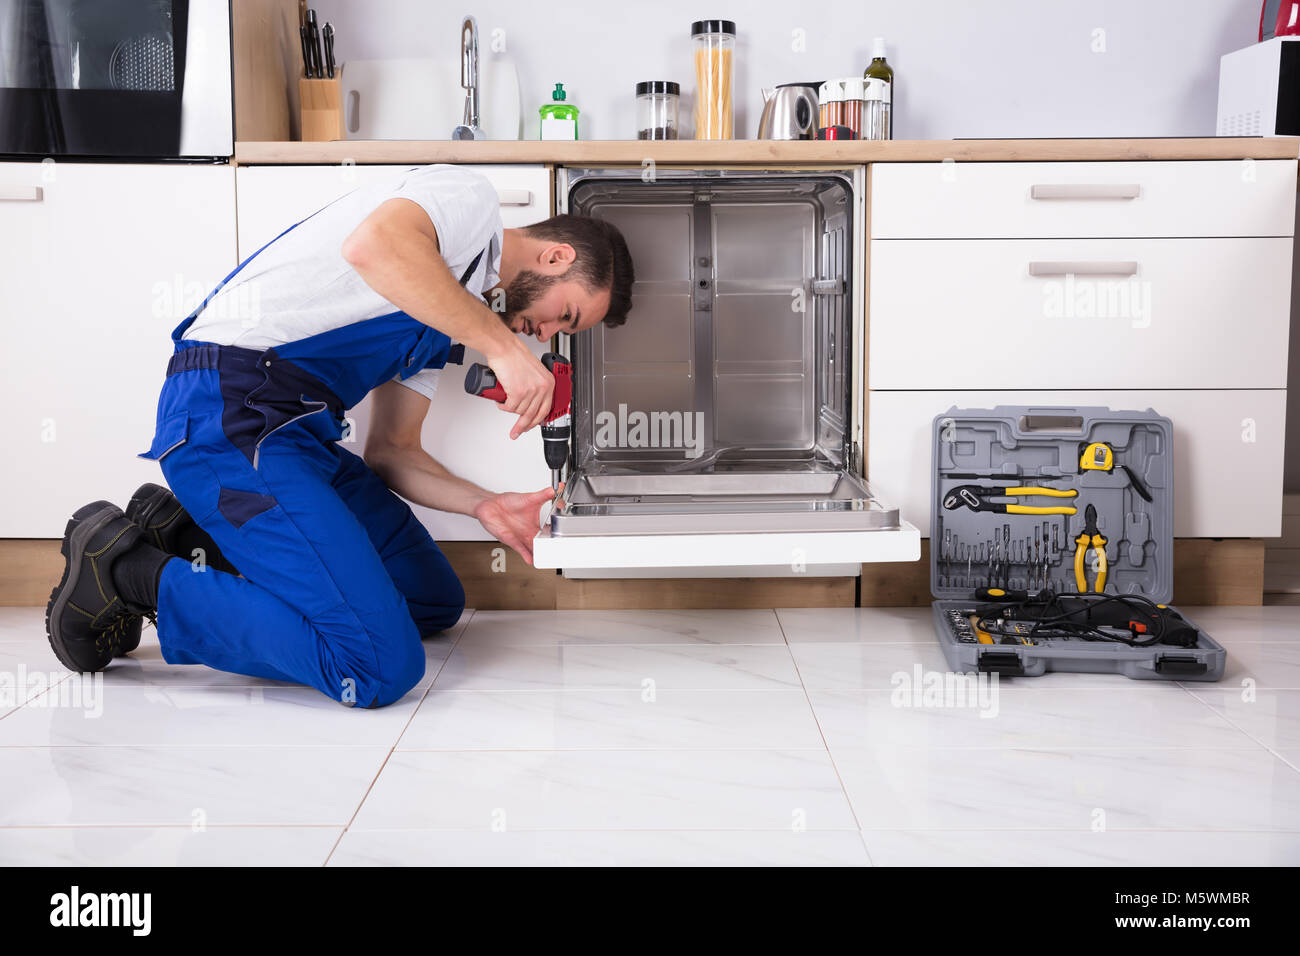 Technicien de jeunes hommes de la réparation d'un lave-vaisselle dans la cuisine Banque D'Images